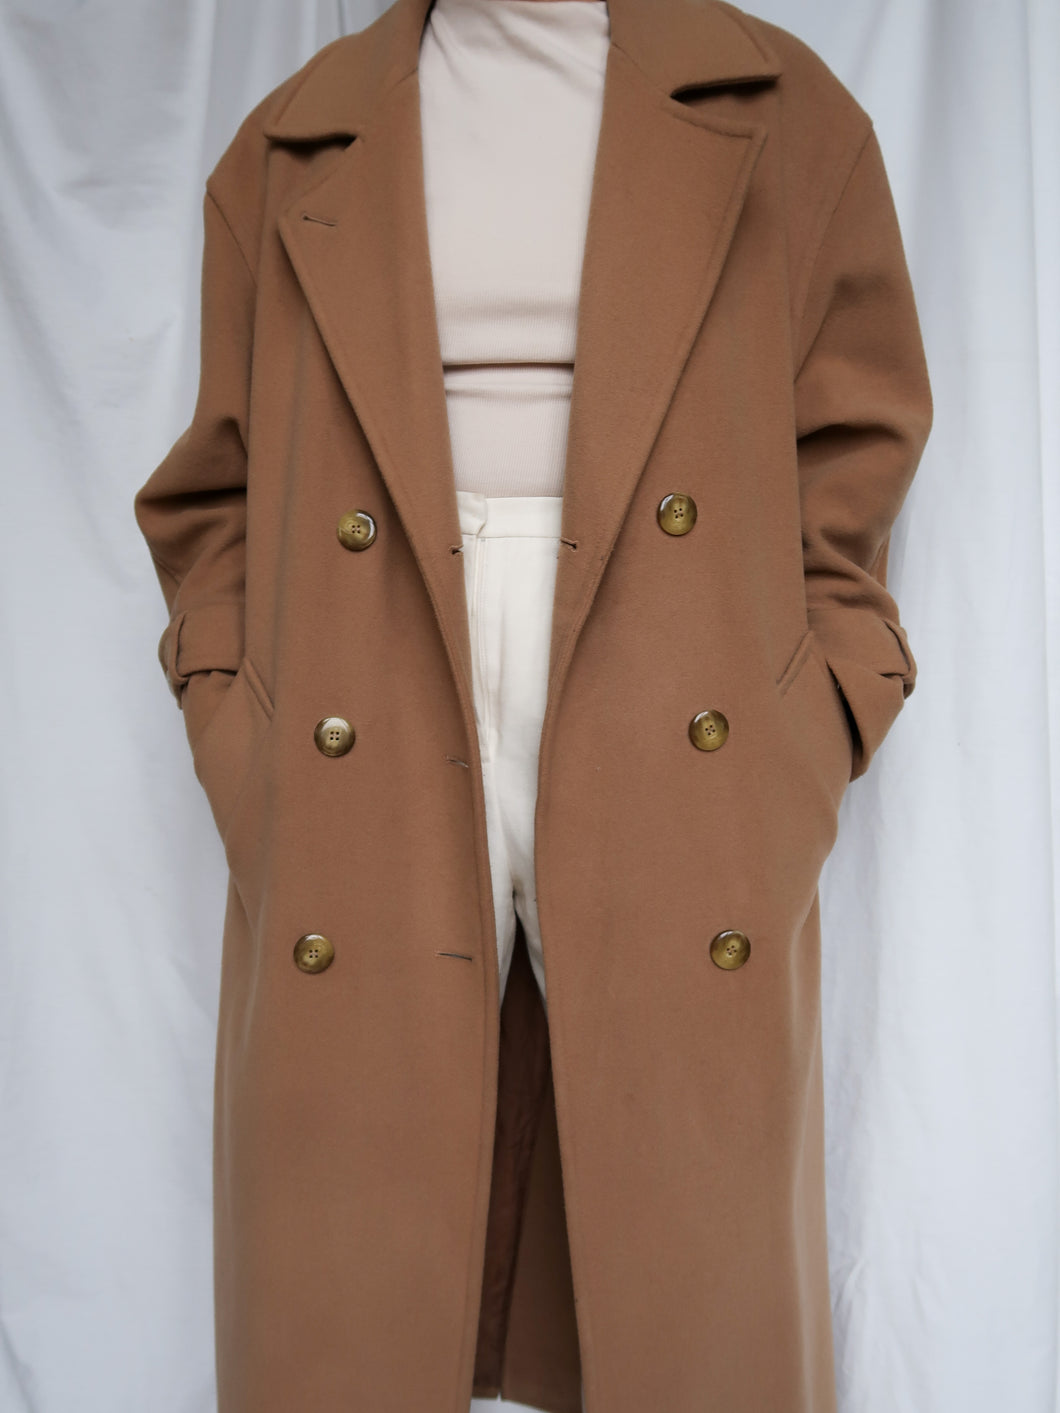 Vintage WEINBERG coat